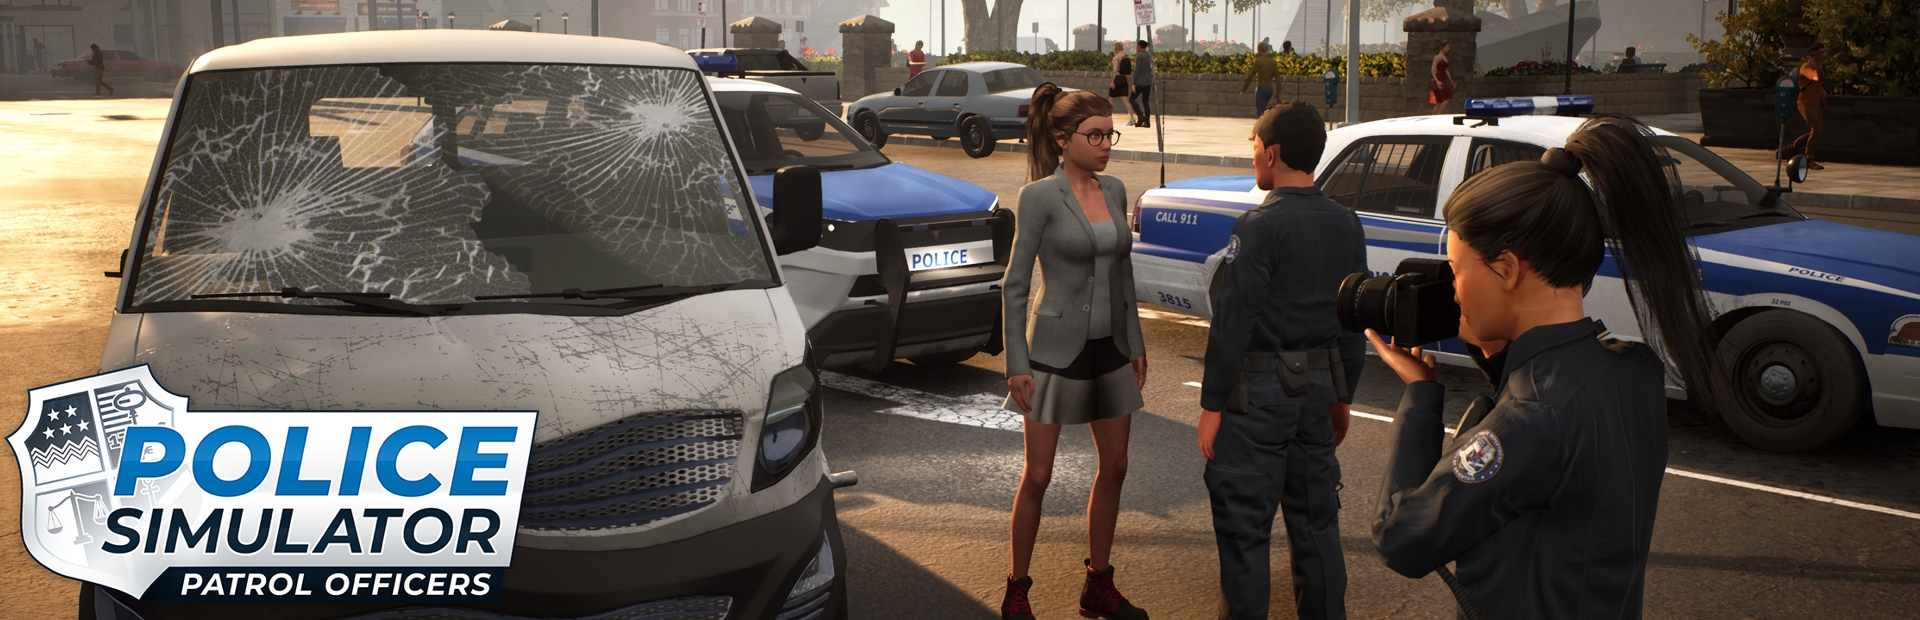 دانلود بازی Police Simulator: Patrol Officers برای PC | گیمباتو